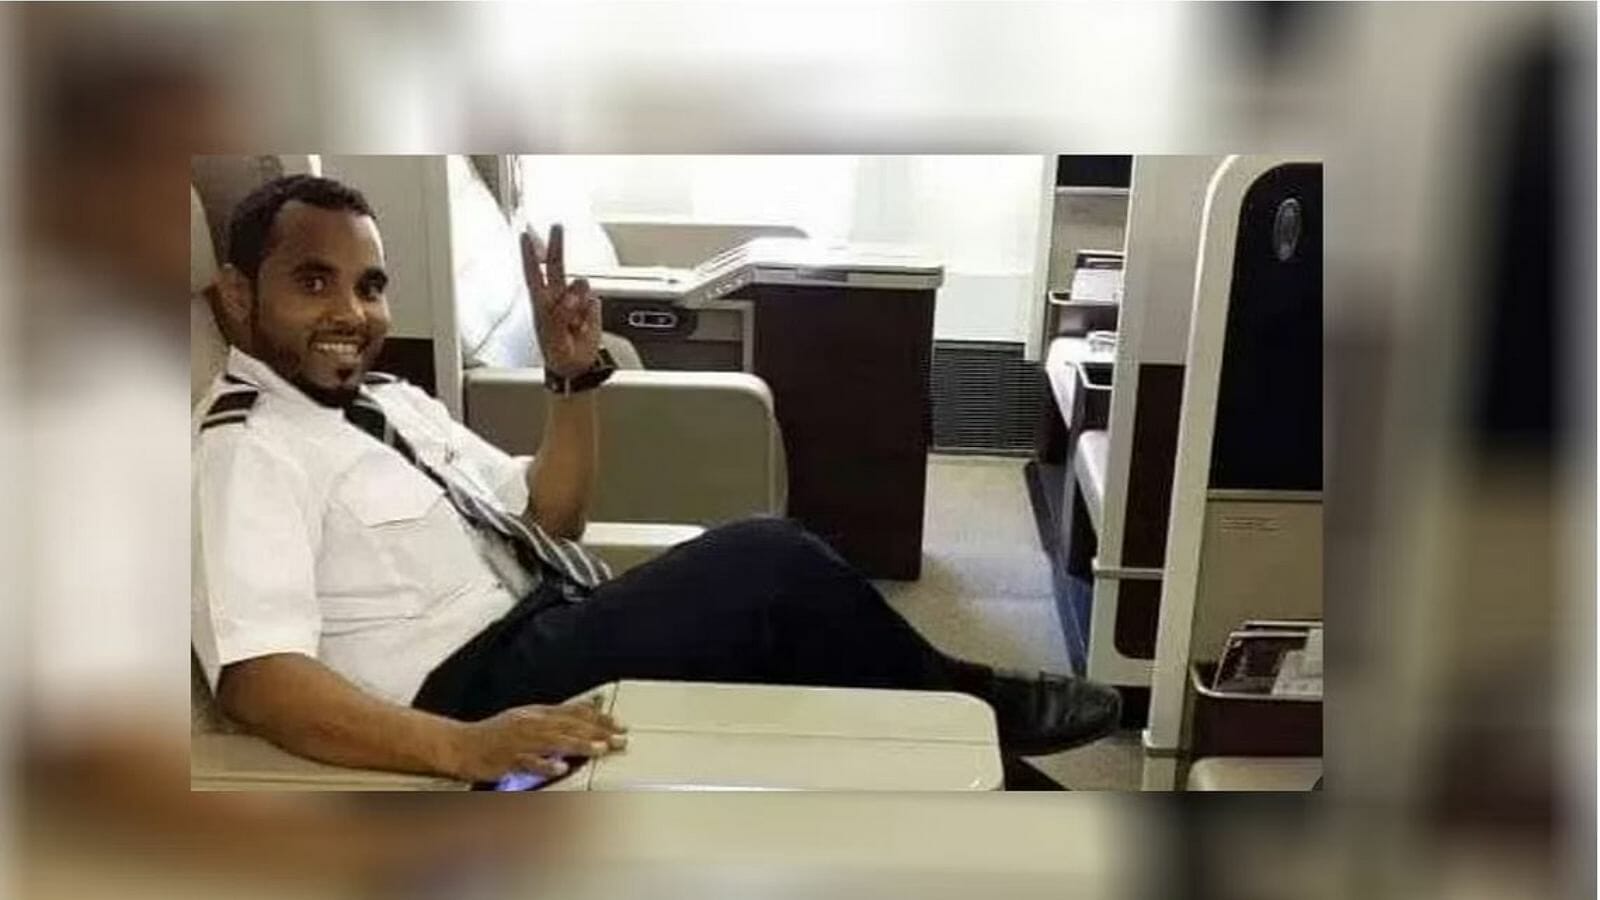 بندر القرهدي.. النطق بالحكم ضد صديقه الذي قتله حرقاً! (فيديو) watanserb.com